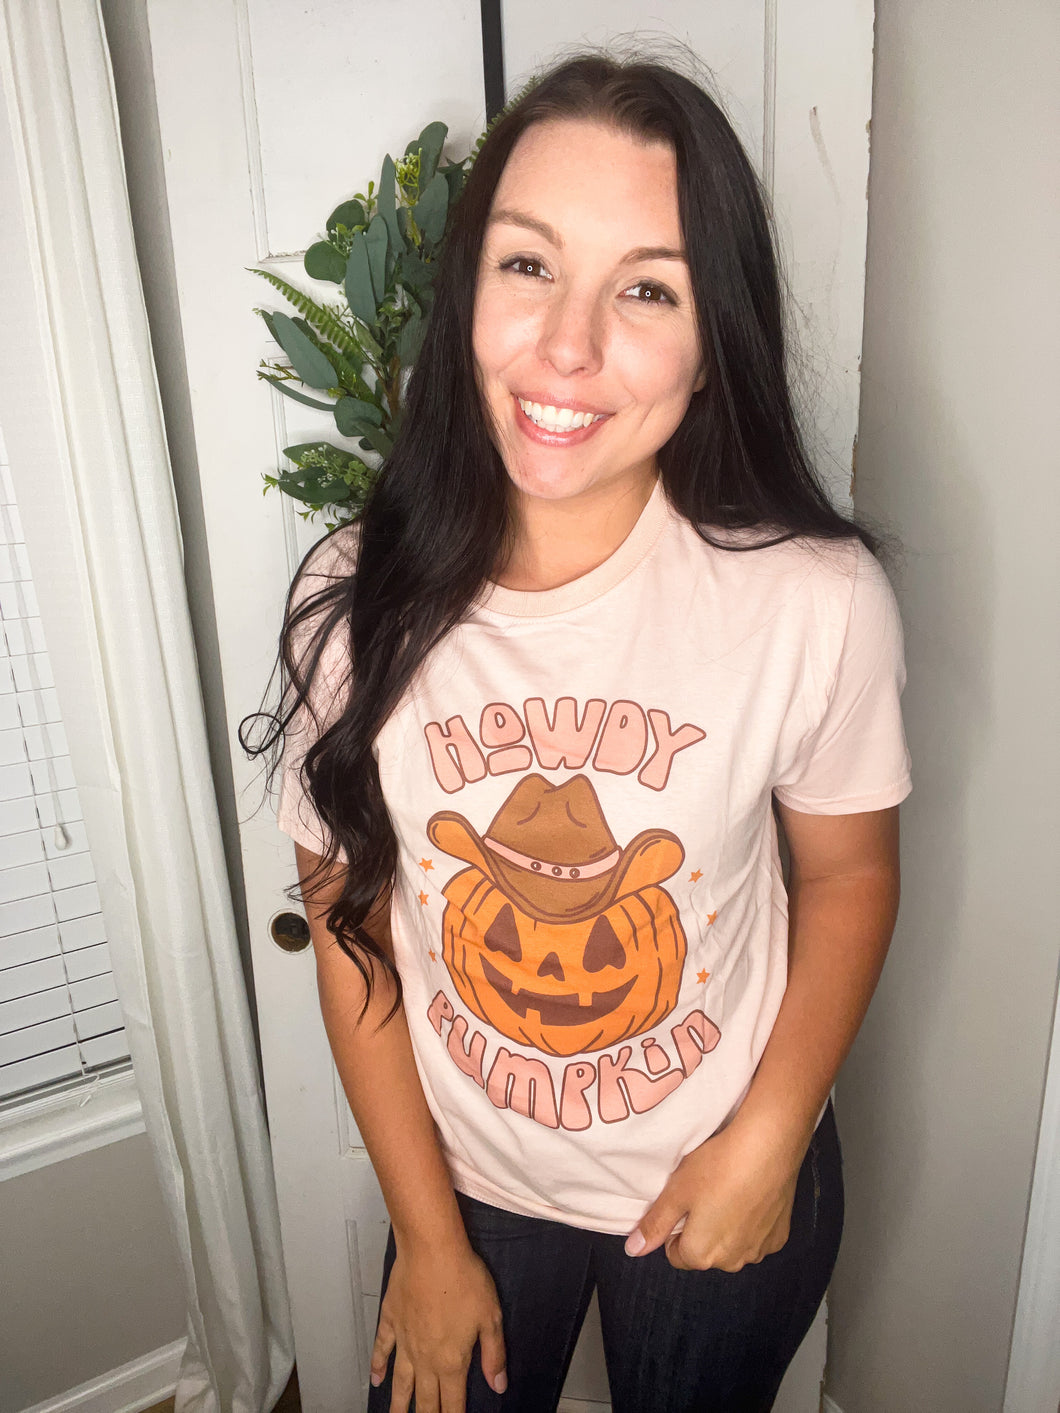 Howdy pumpkin